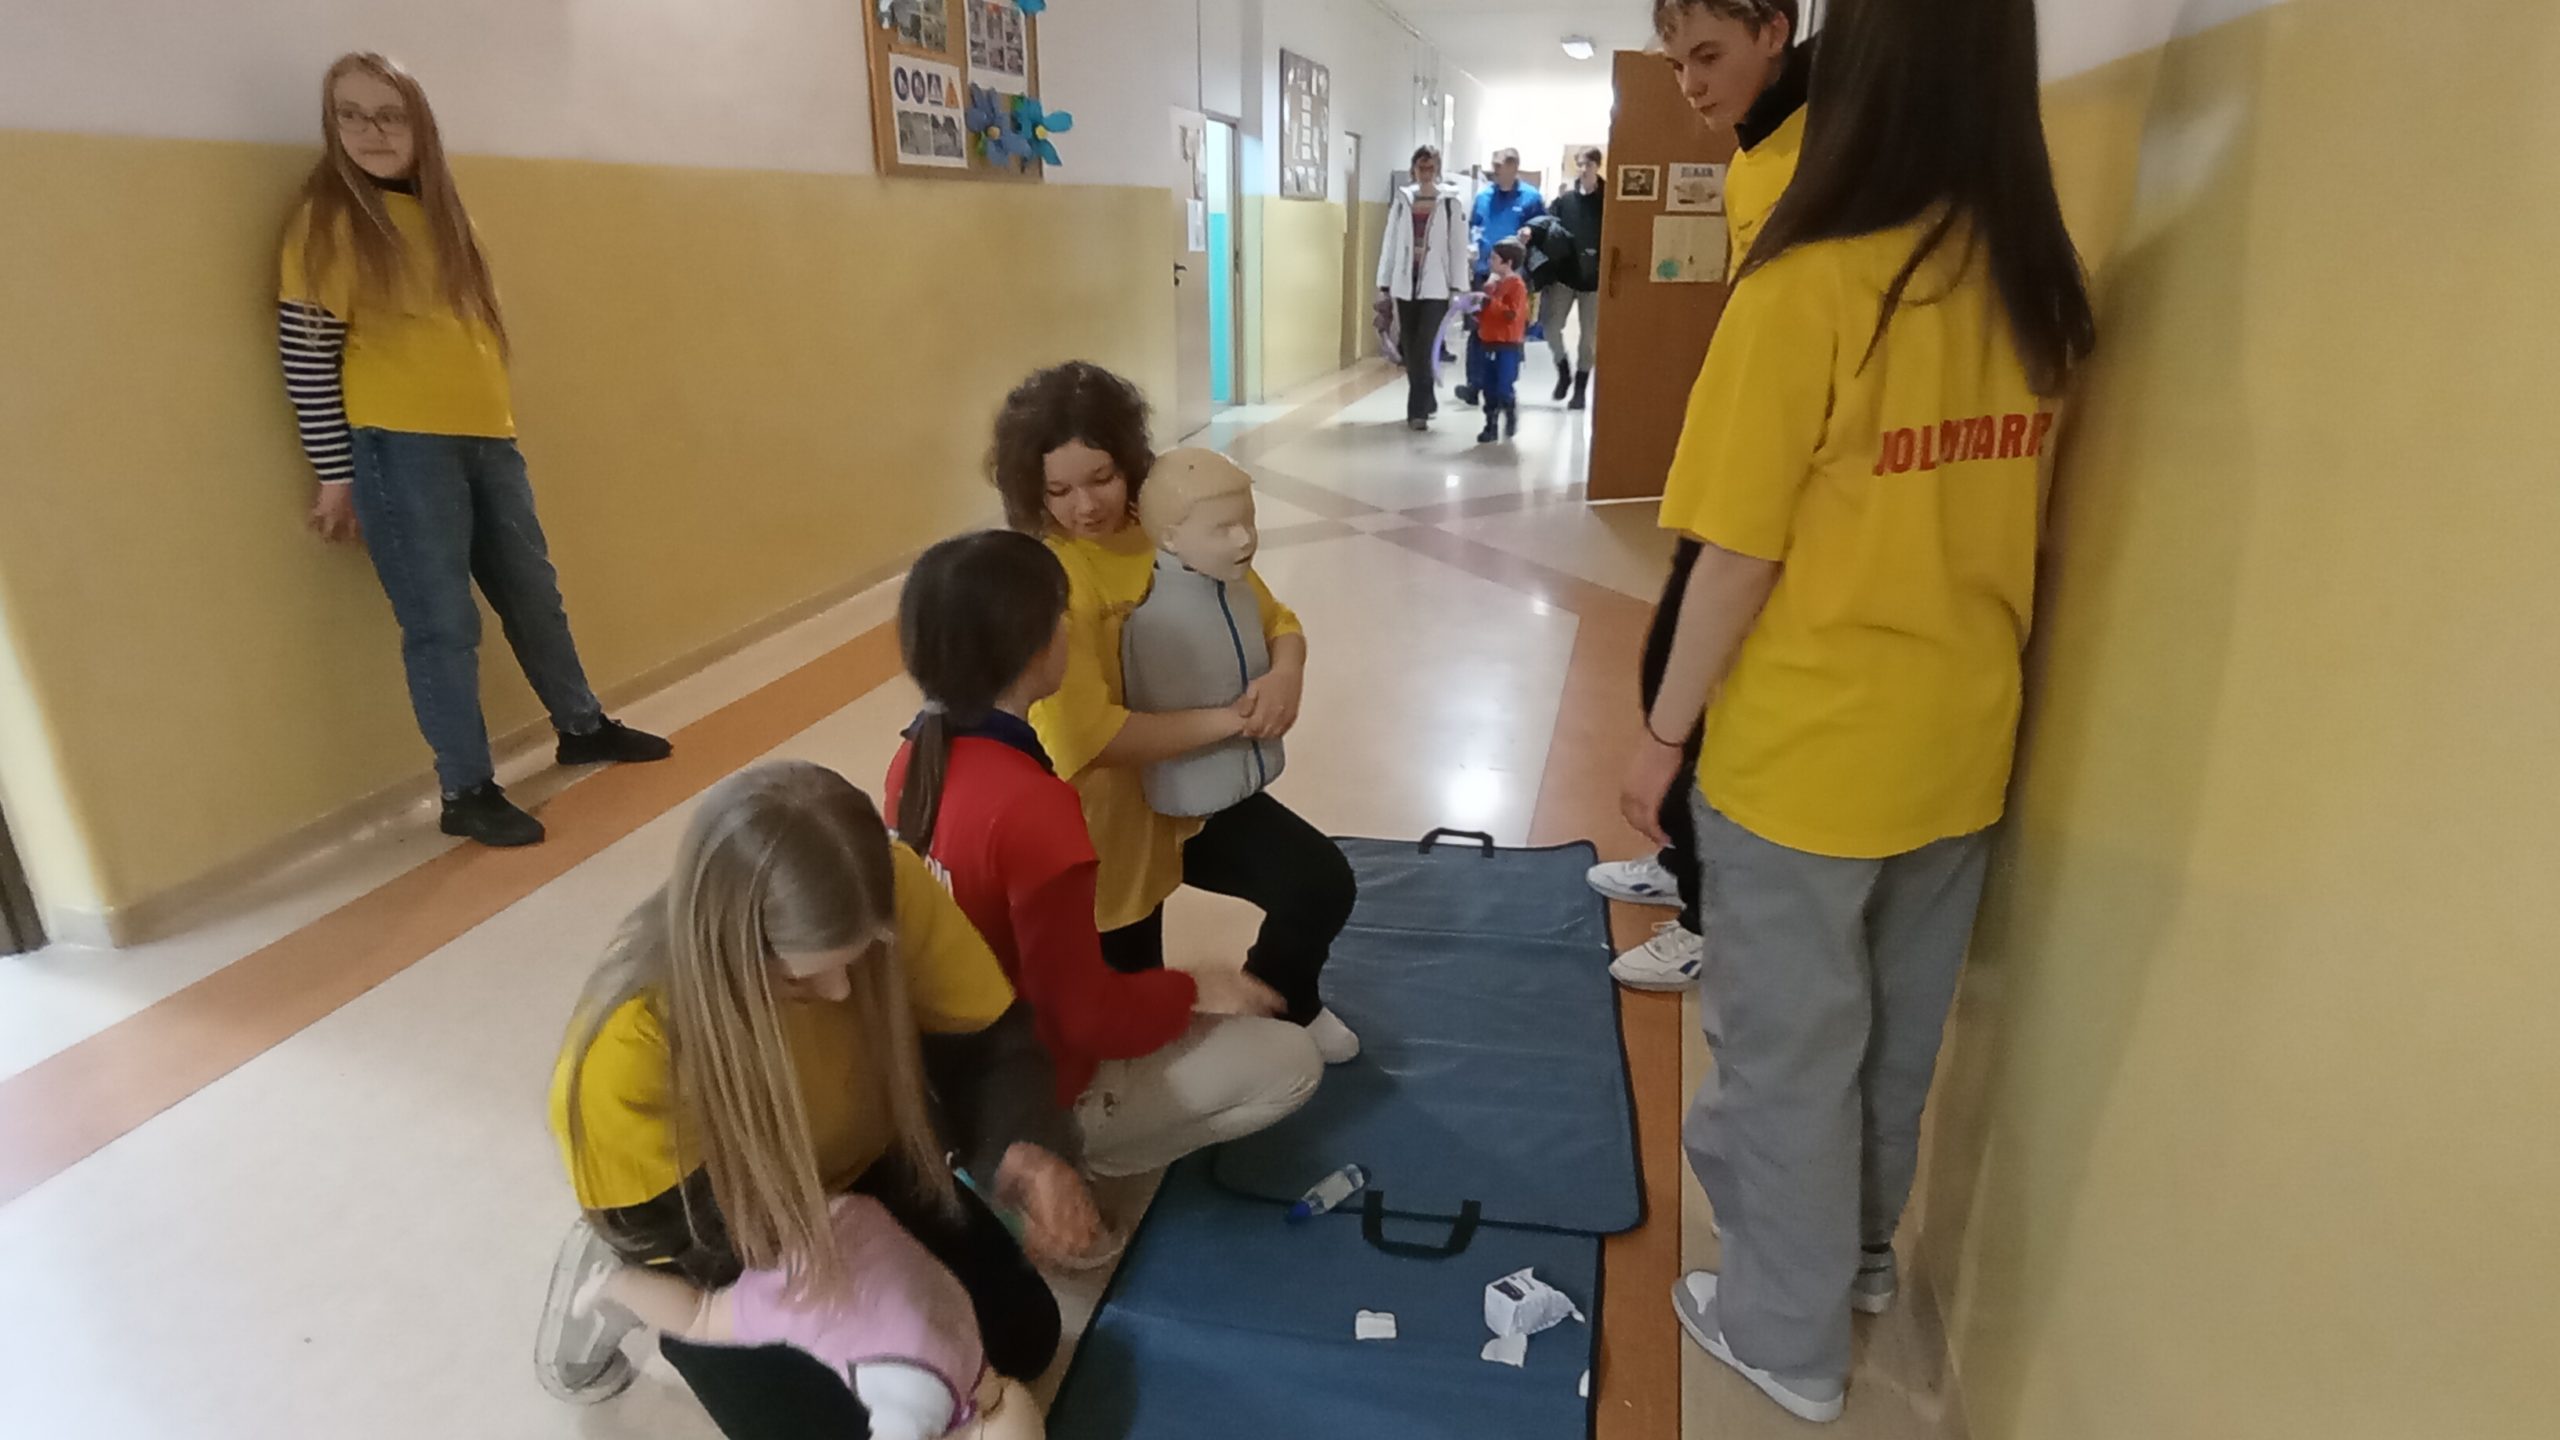 Na szkolnym korytarzu dwie uczennice w żółtych koszulkach klęczą ćwicząc odkrztuszanie dzieci na fantomach, jedna uczennica w czerwonej koszulce kuca przy nich, 3 uczniów się przyglada. W tle uczestnicy Dnia Otwartego. 